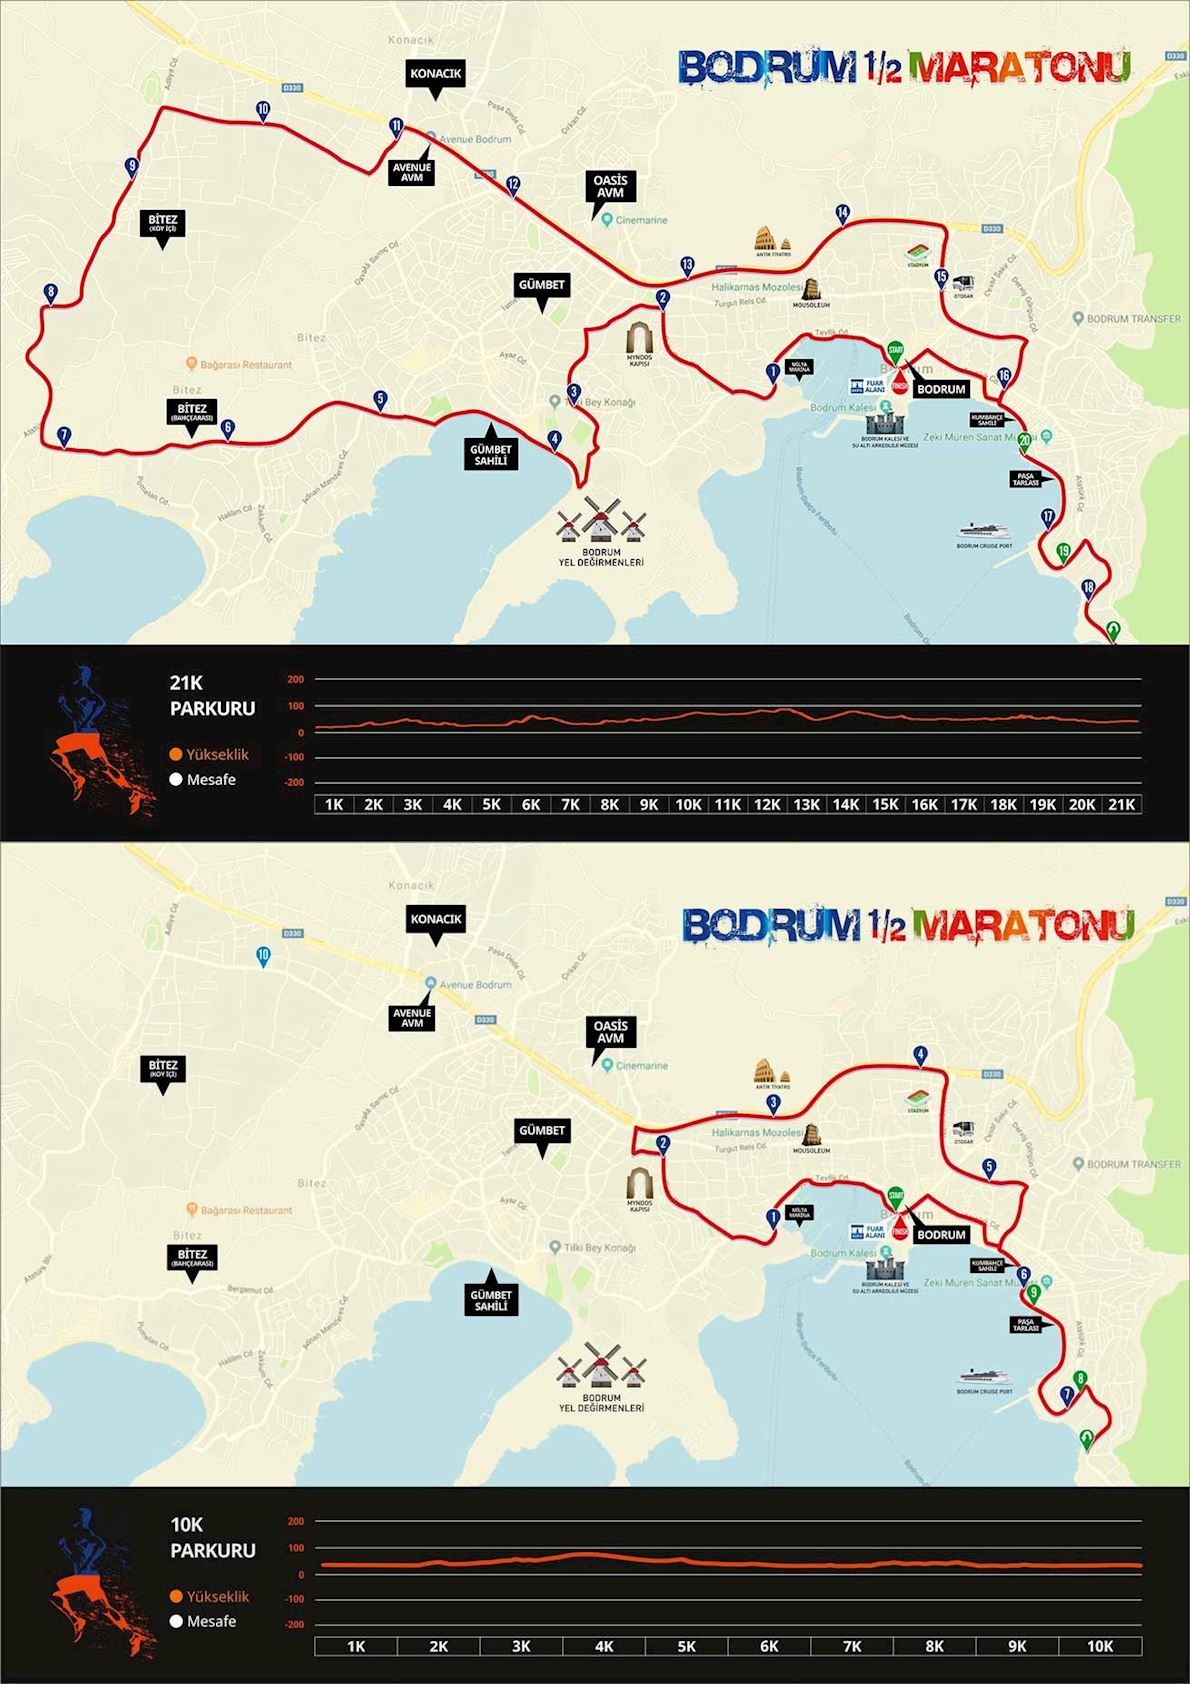 Bodrum Half Marathon Mappa del percorso